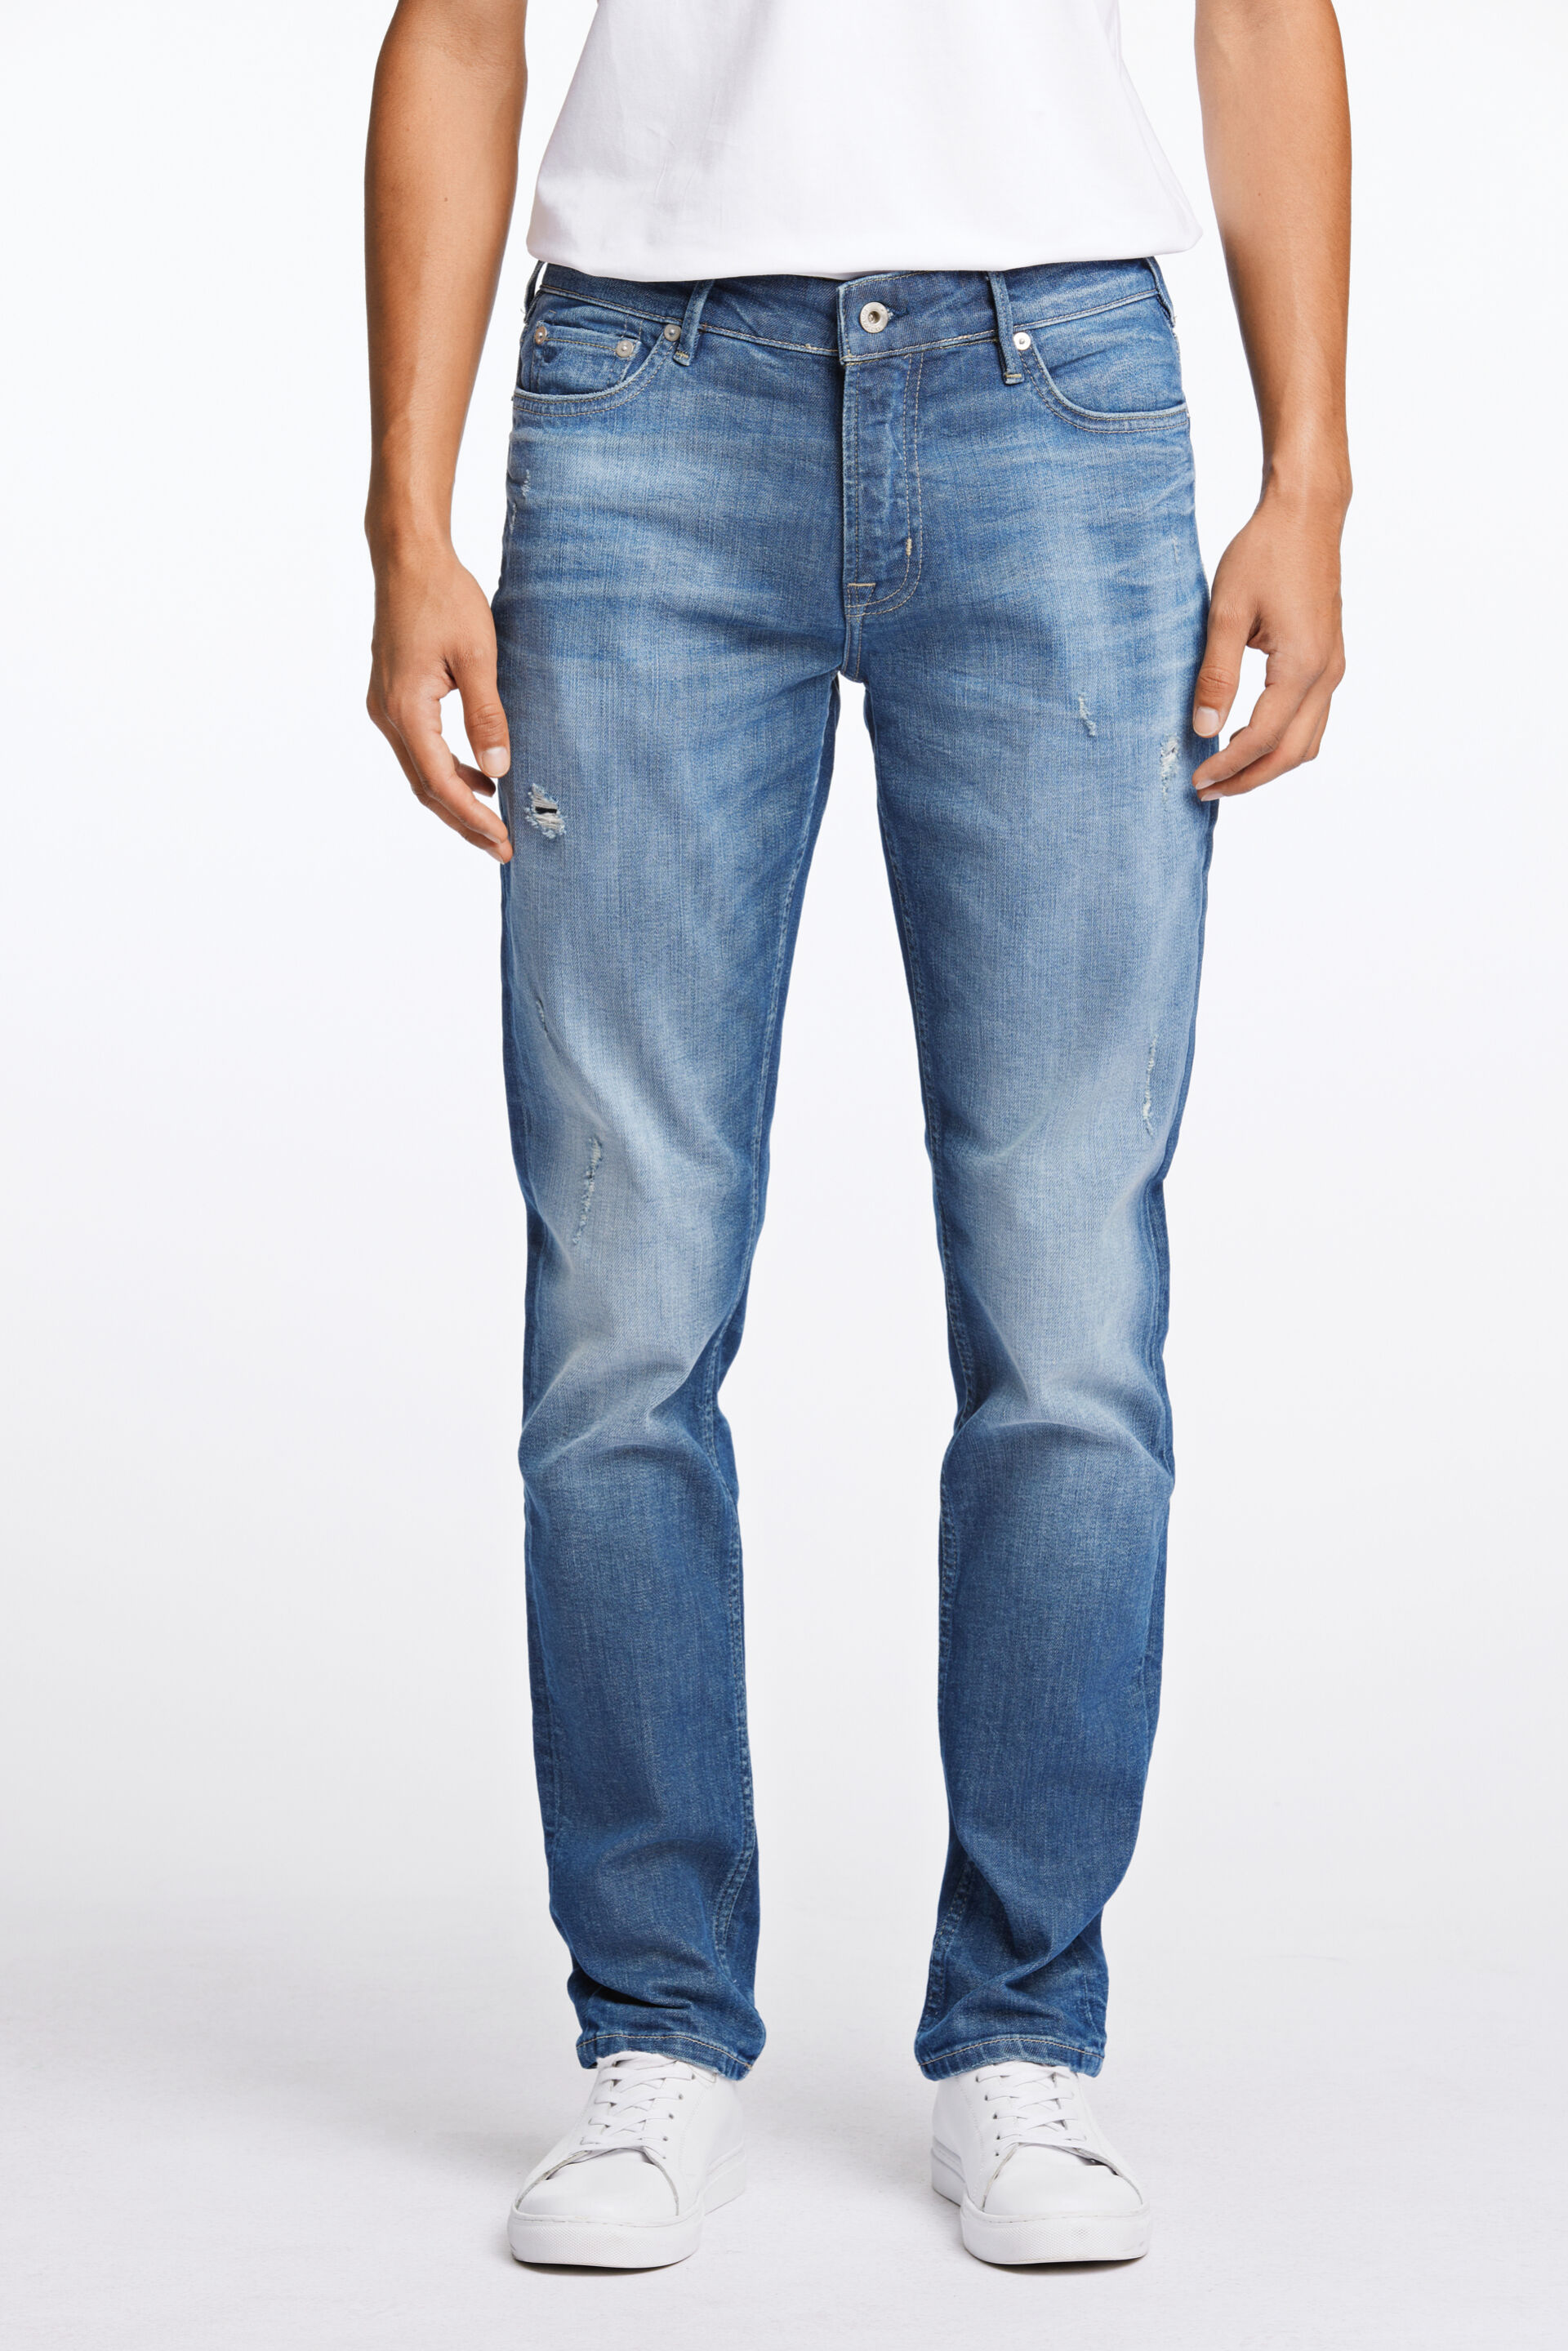 Junk de Luxe  Jeans 60-022010